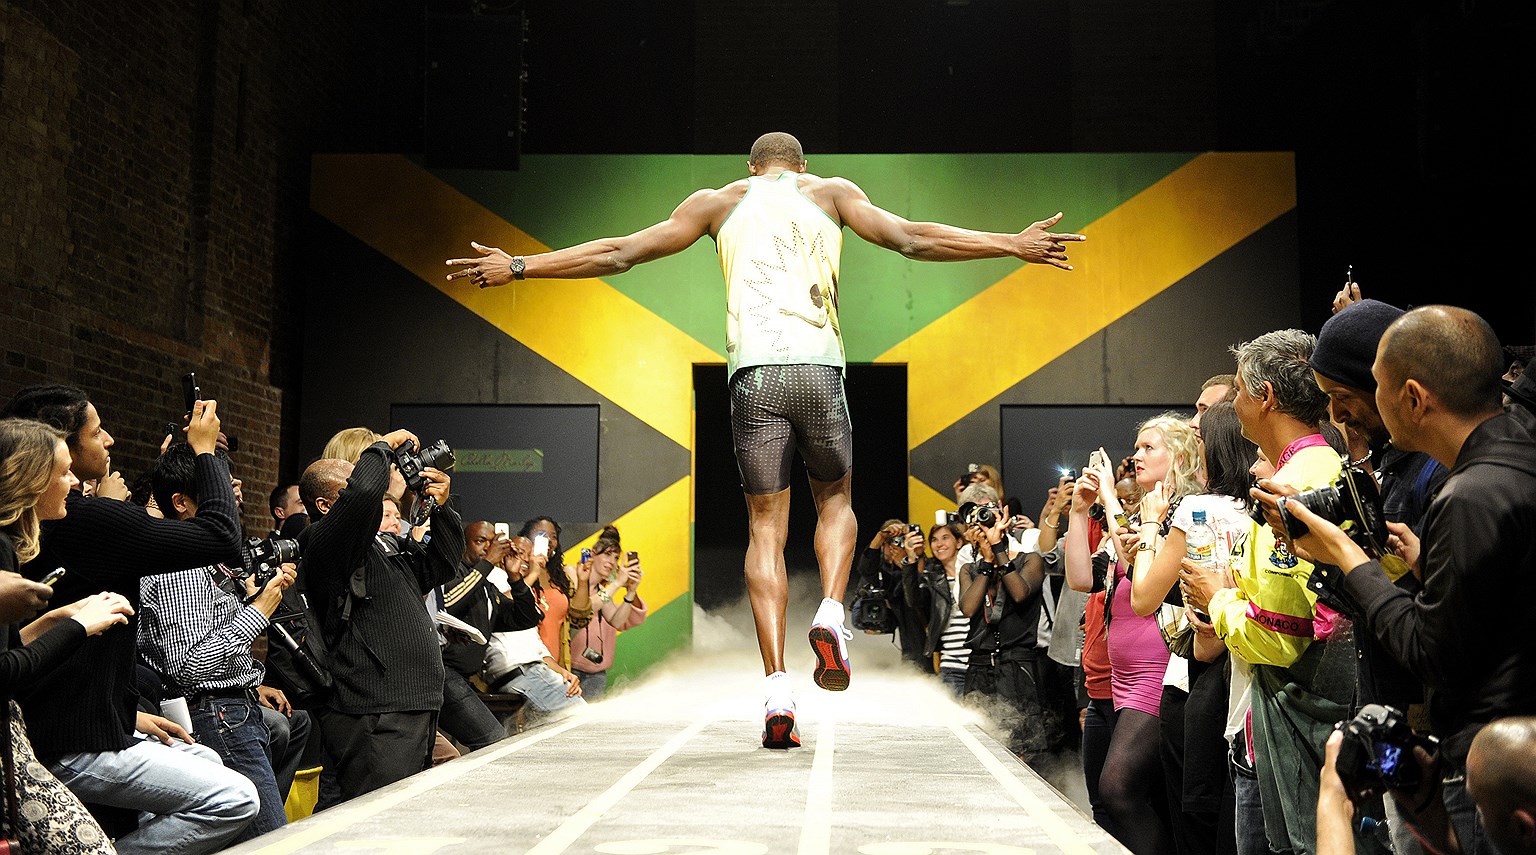 Болт на показе олимпийской формы Ямайки для легкоатлетов, в которой спортсмены отправились на игры в Лондоне в 2012 году. Дизайнером коллекции выступила Седелла Марли, дочь Боба Марли, совместно с компанией Puma